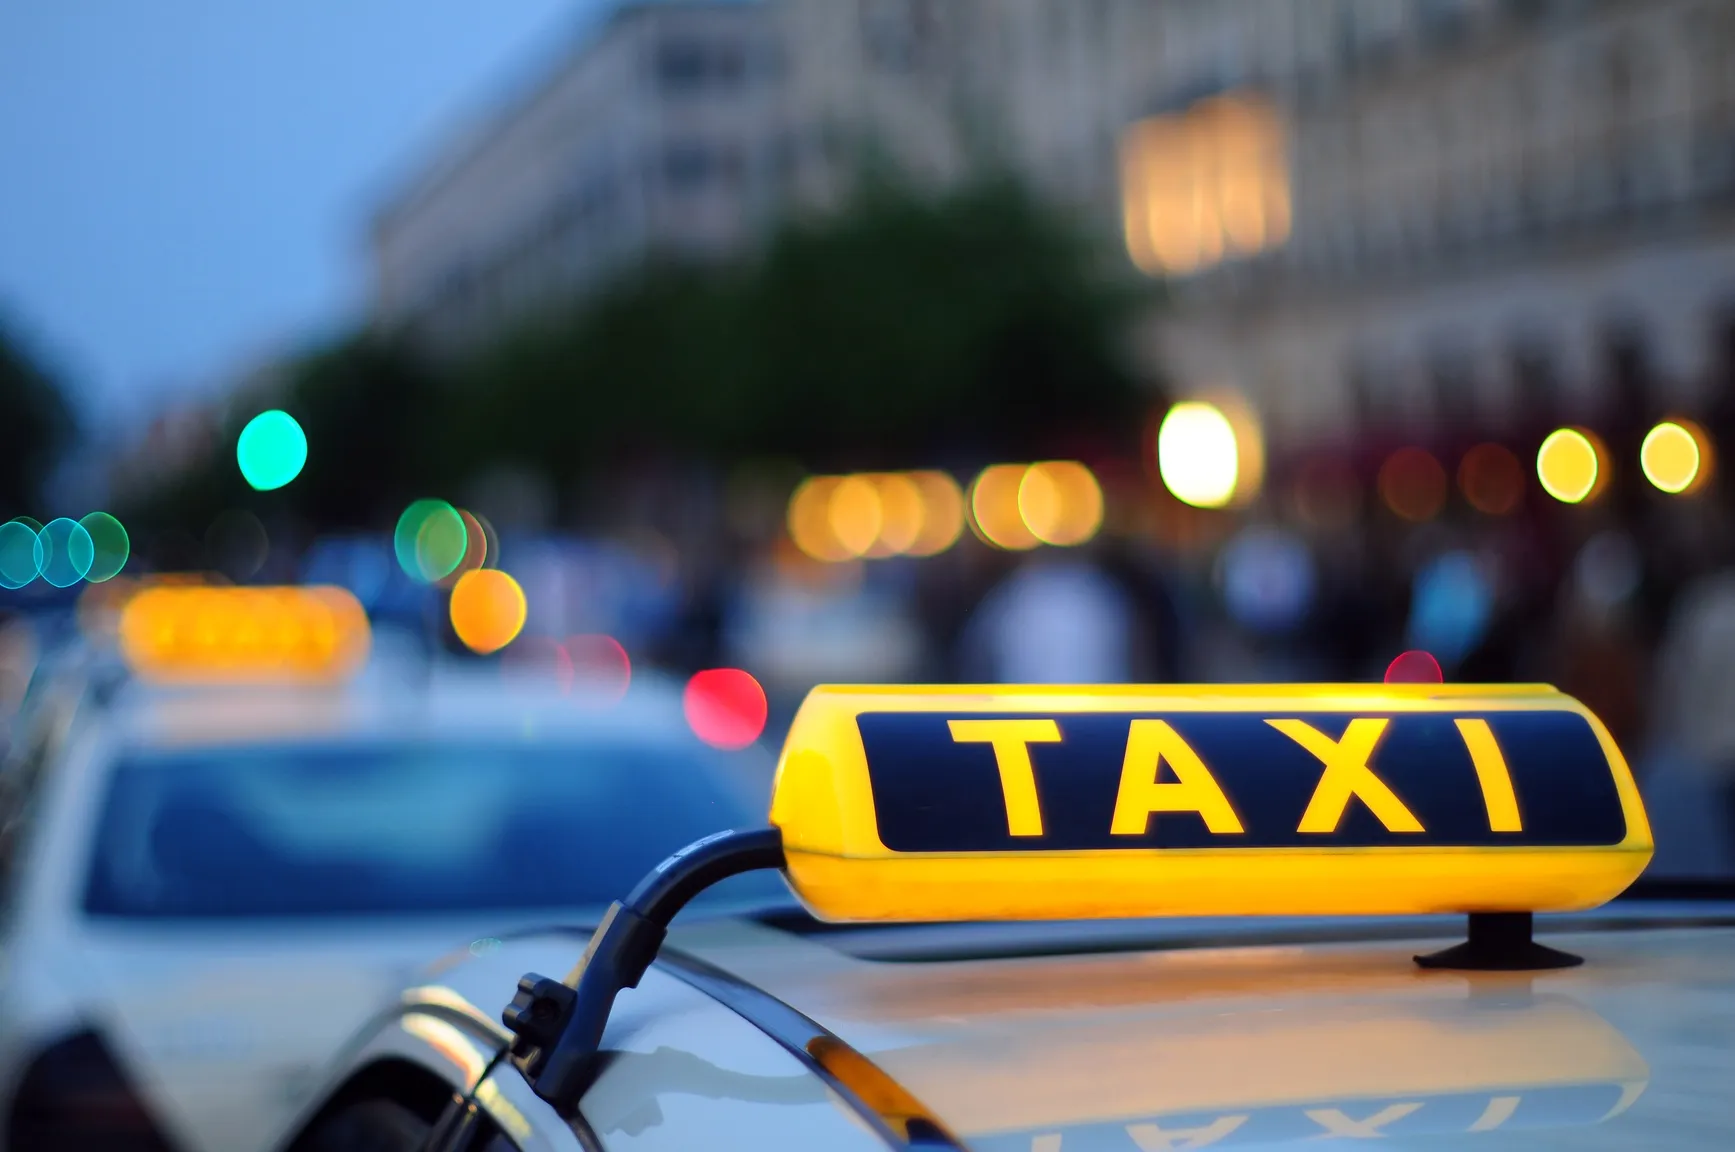 ТМД елдерінің ішінде ең қымбат такси Қазақстанда – статистика